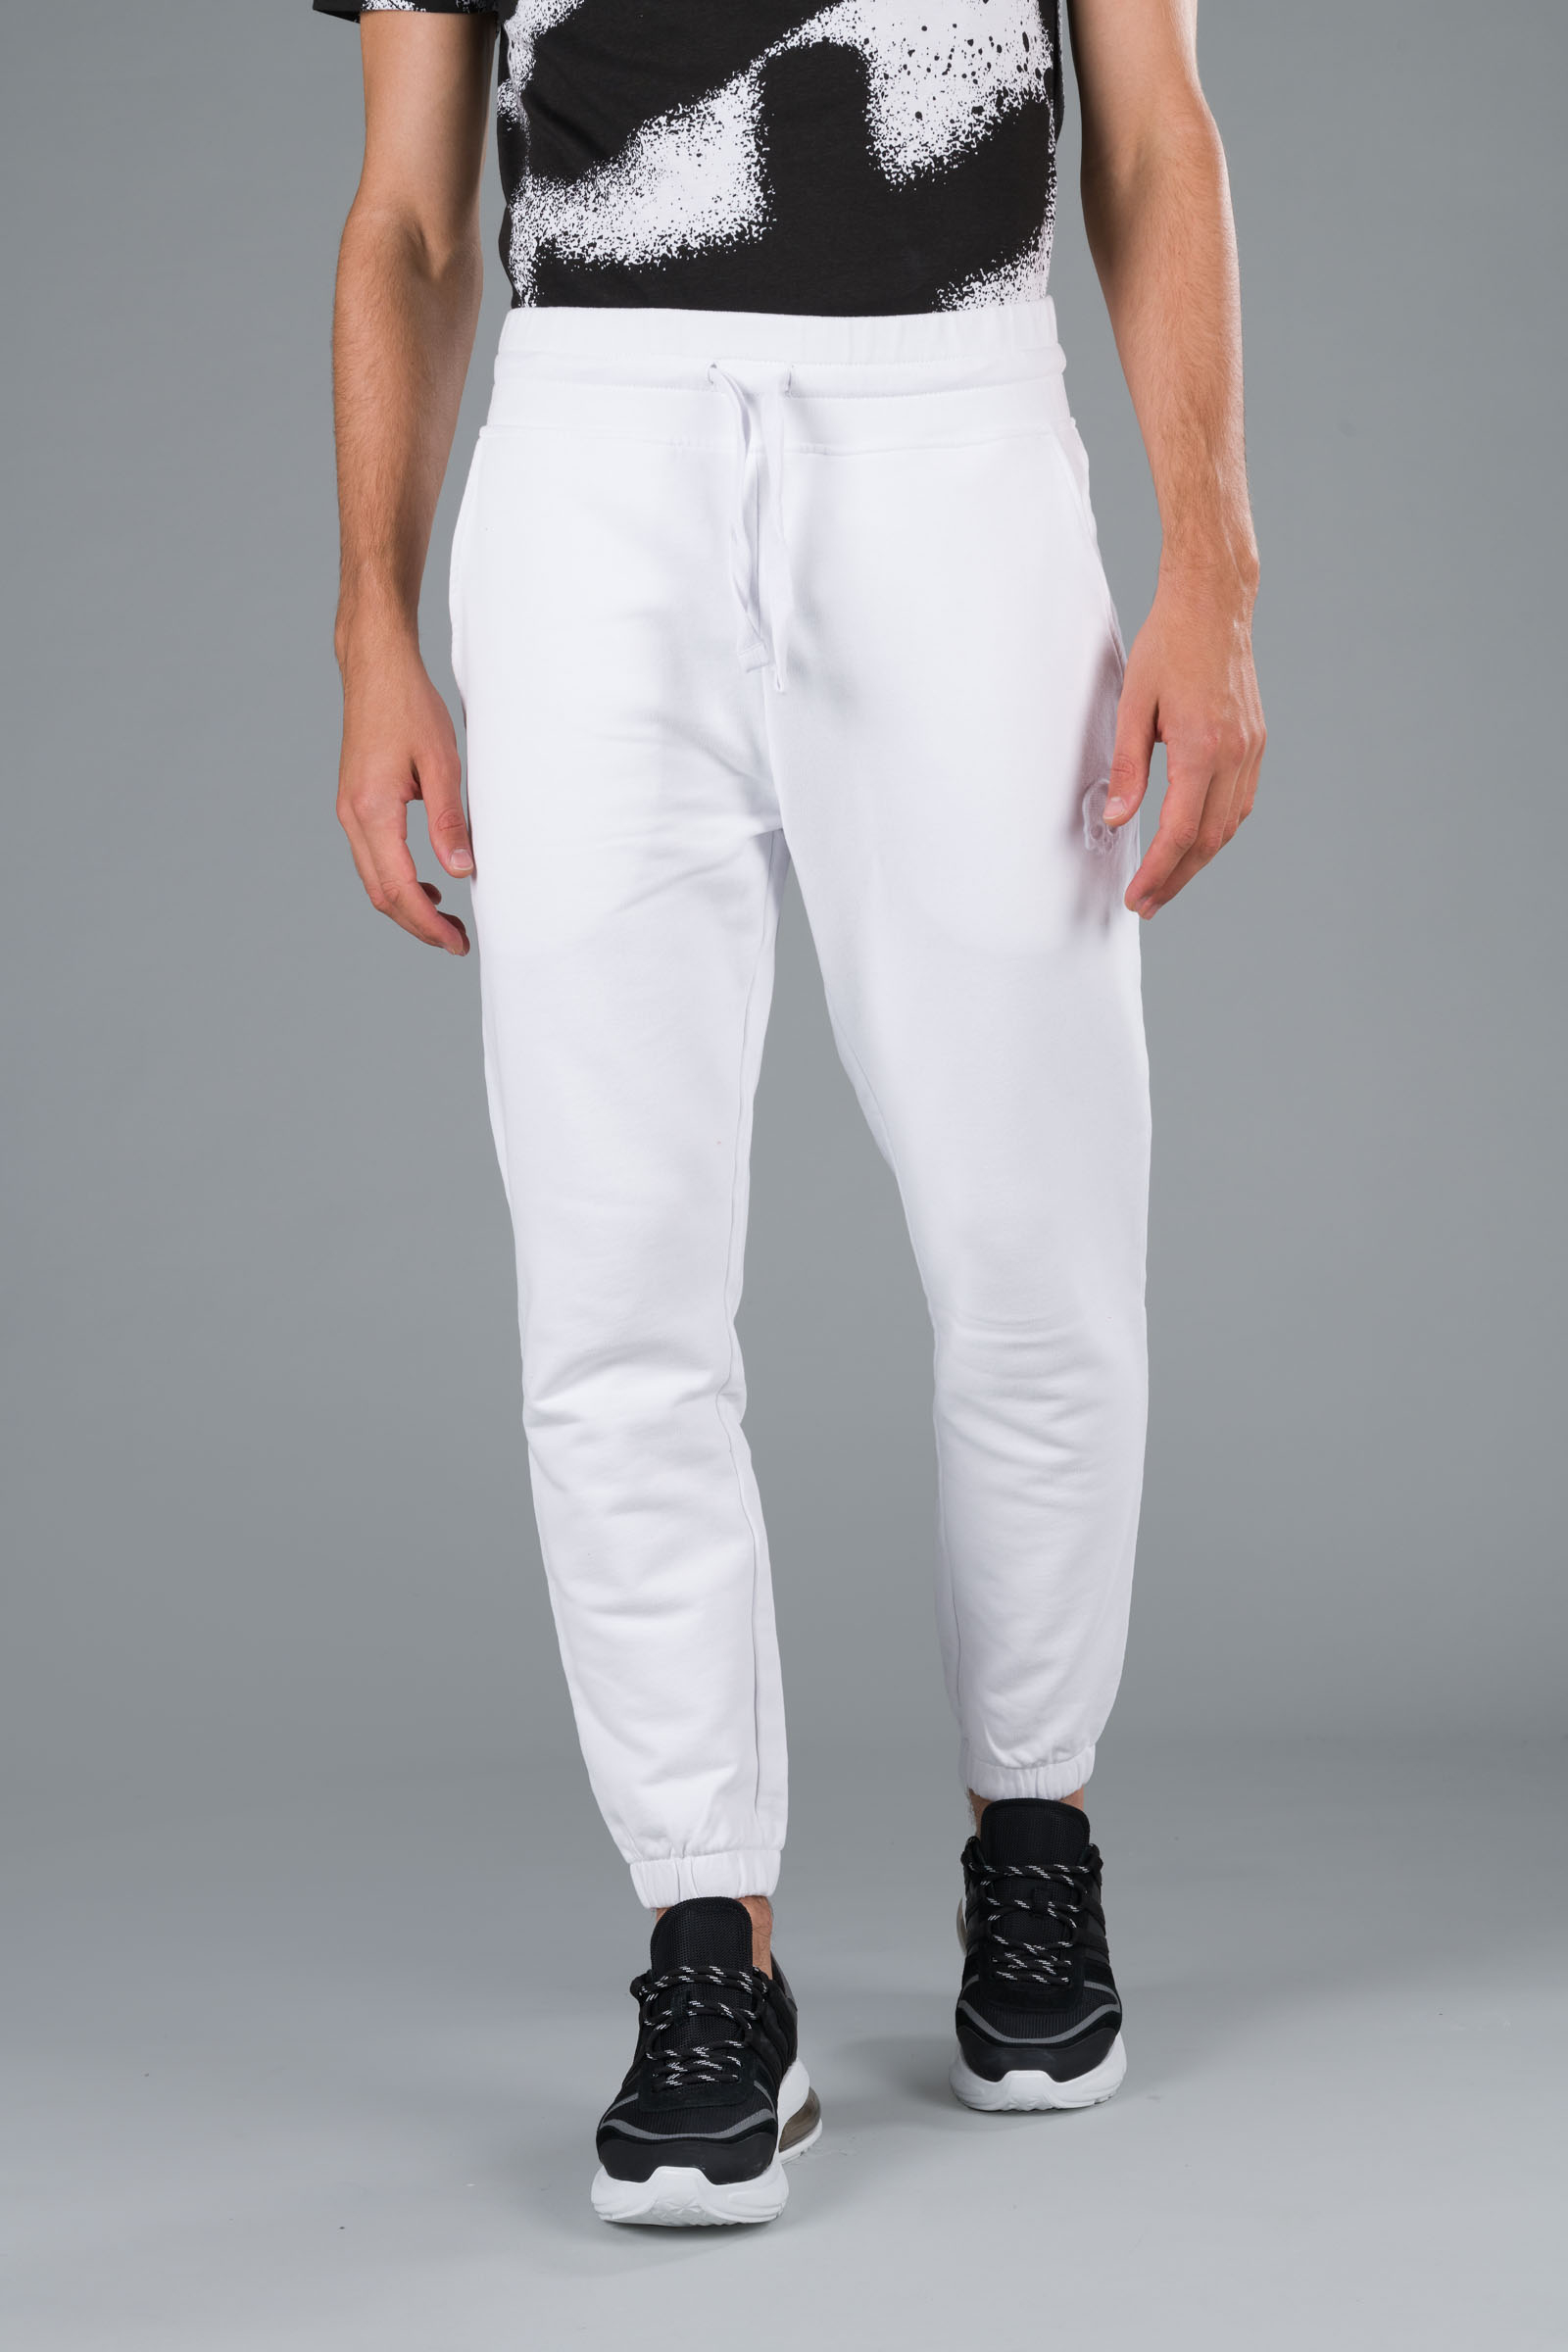 SKULL SWEATPANTS - WHITE - Abbigliamento sportivo | Hydrogen